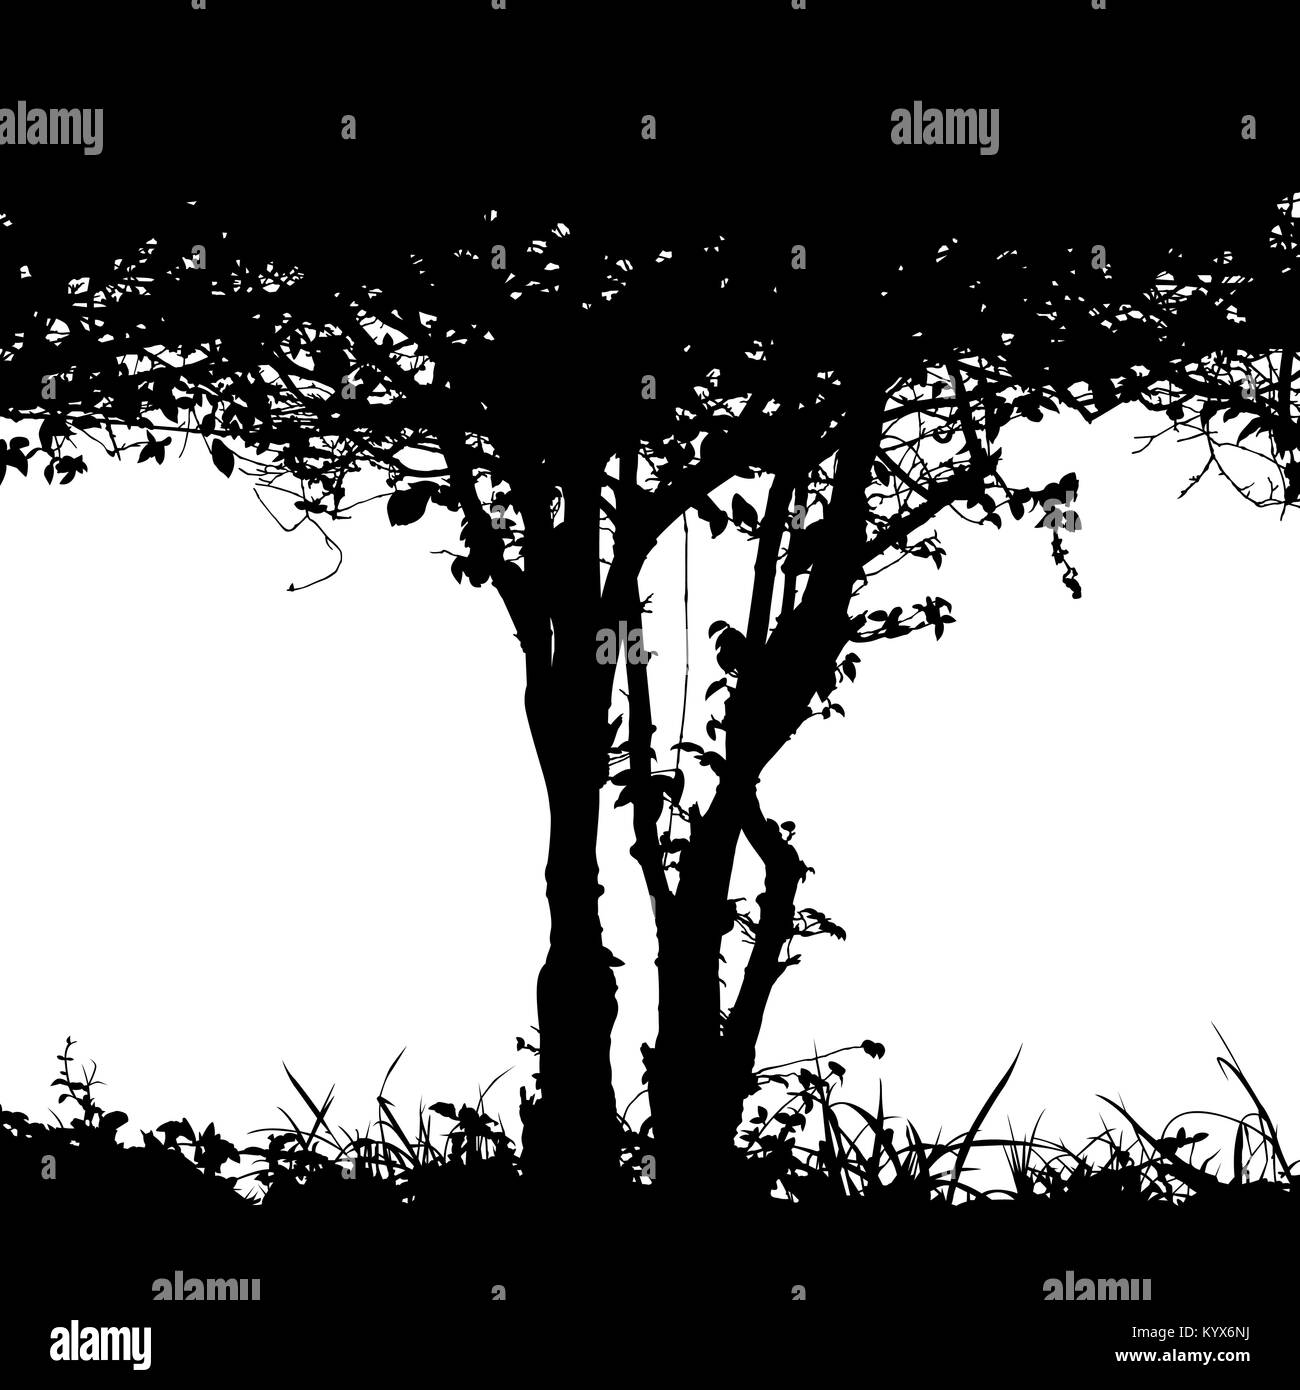 Silueta vectorial editable detalle del tronco de un arbusto y matorrales con espacio de copia Ilustración del Vector